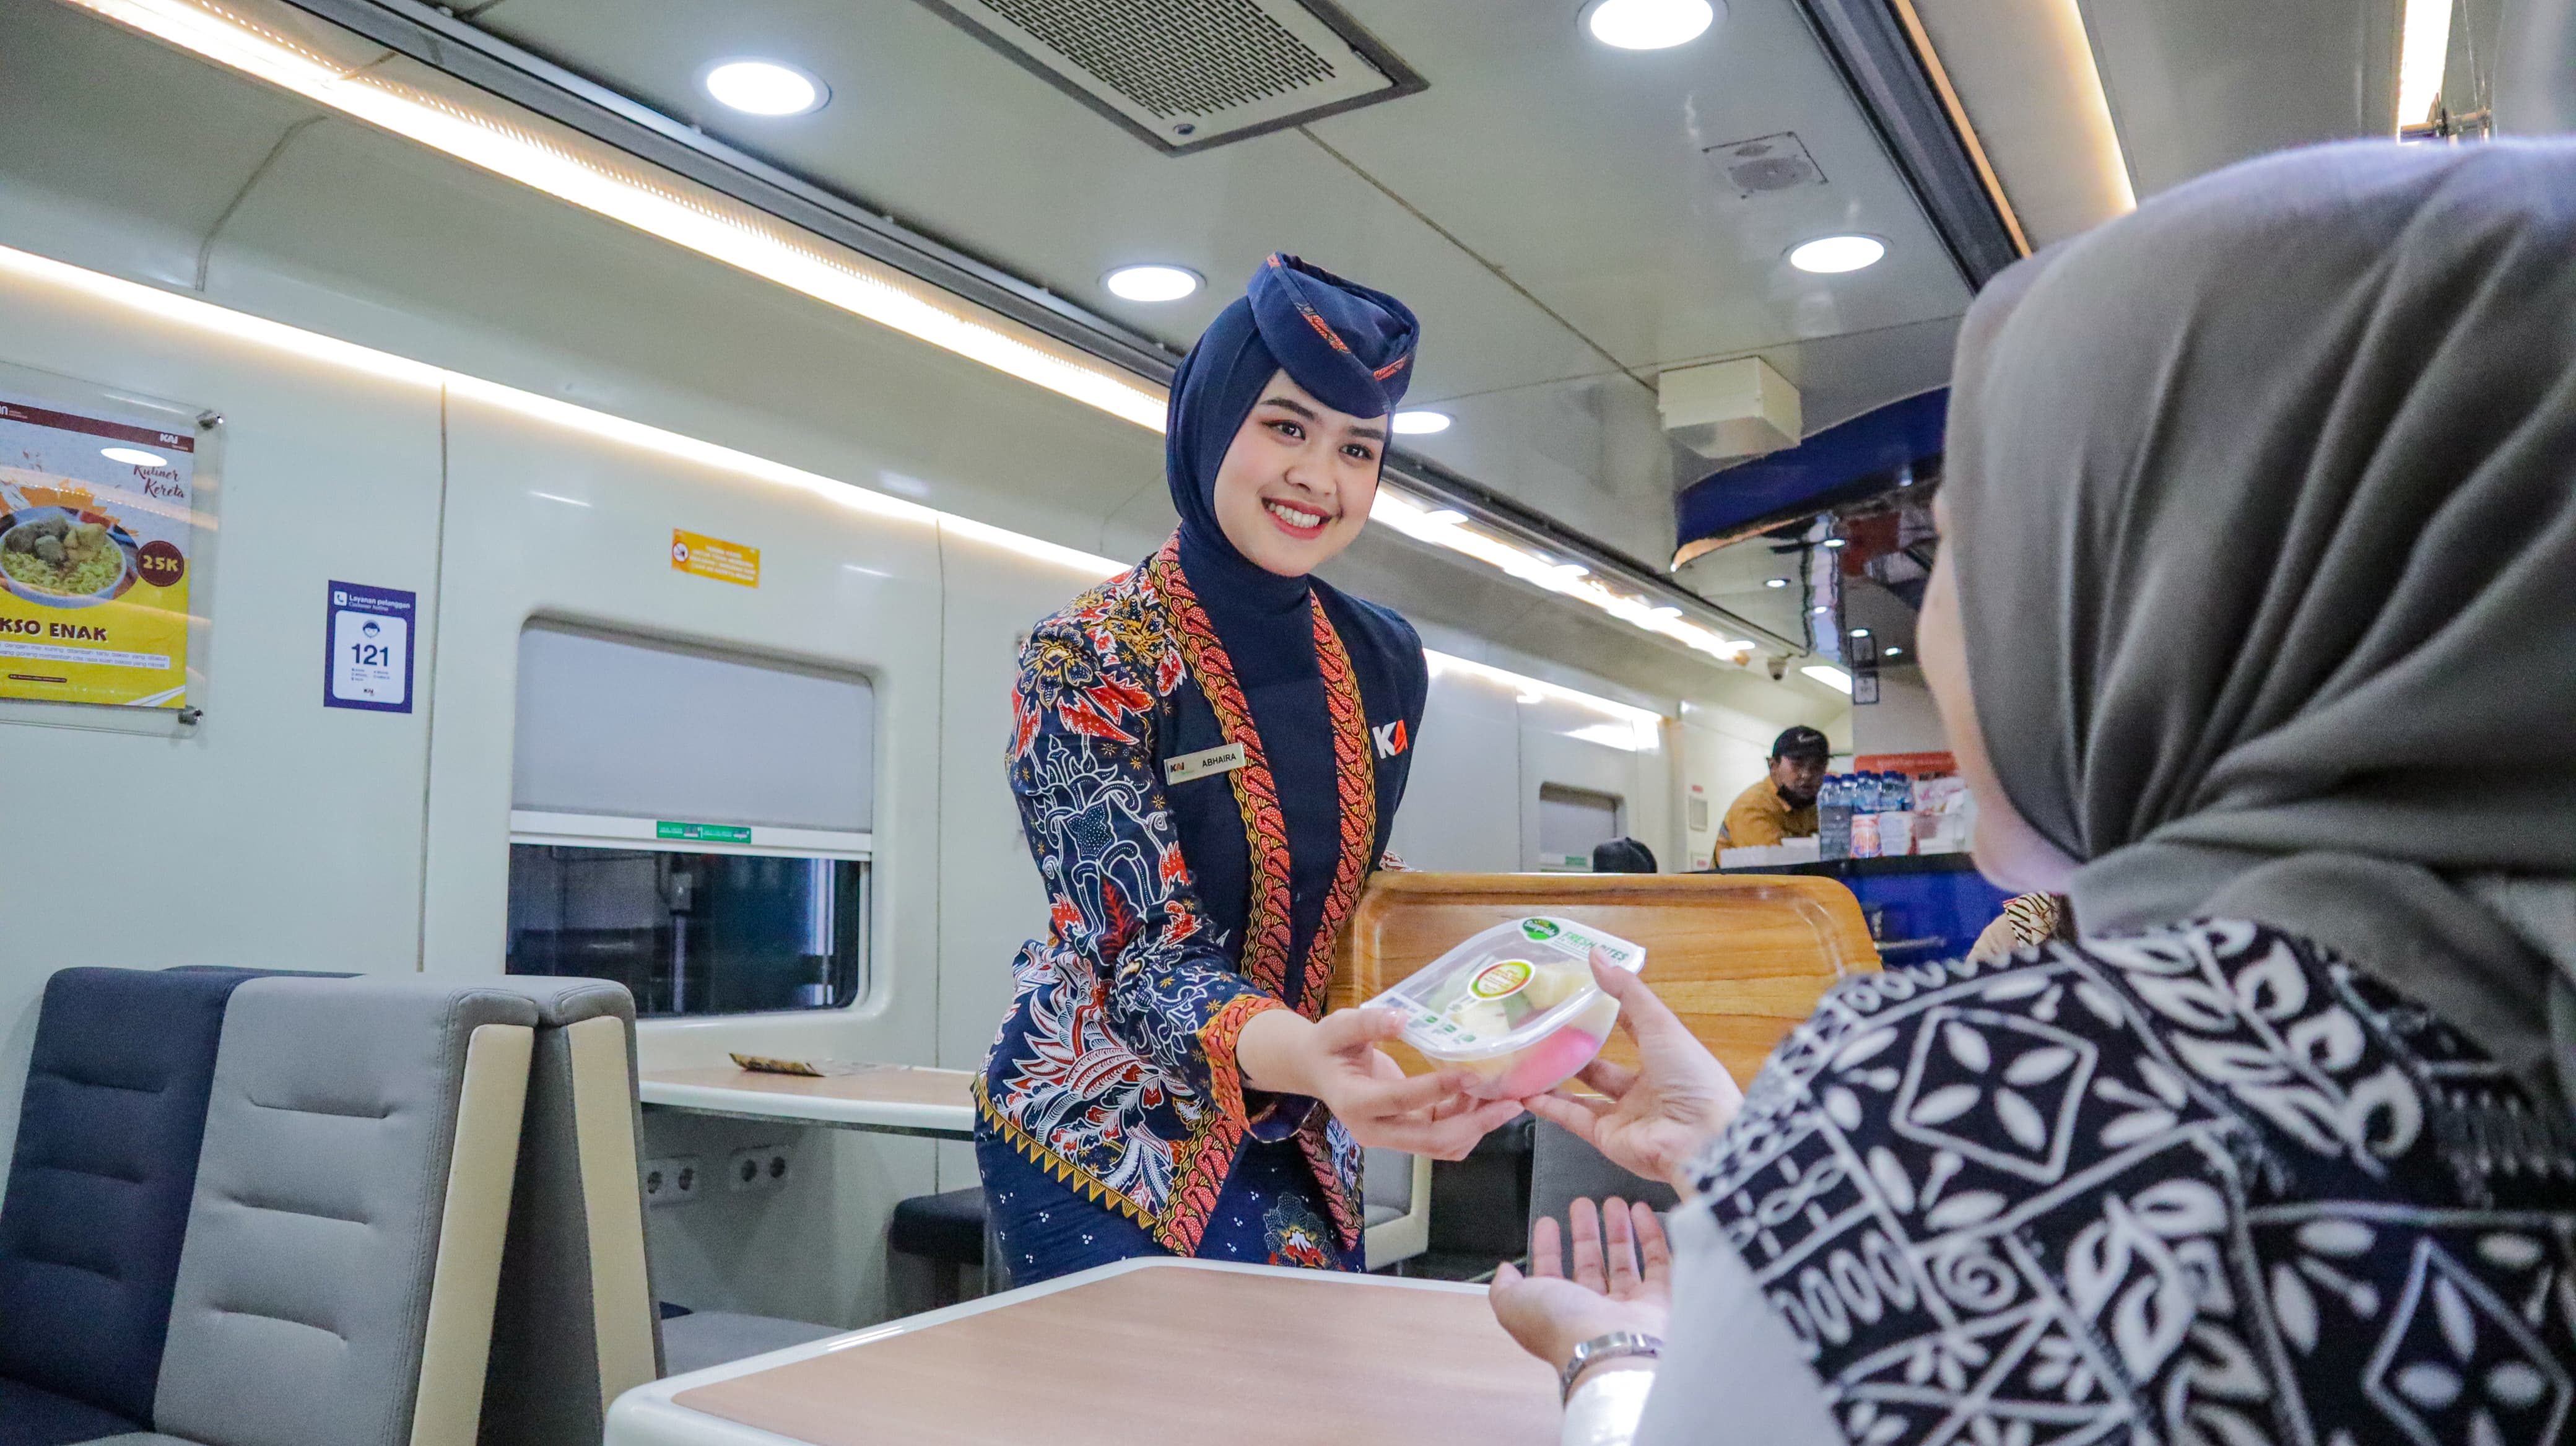 KAI Service Ajak Pelanggan Donasi Rp 100 untuk Berbagi Kebahagiaan saat Idul Adha